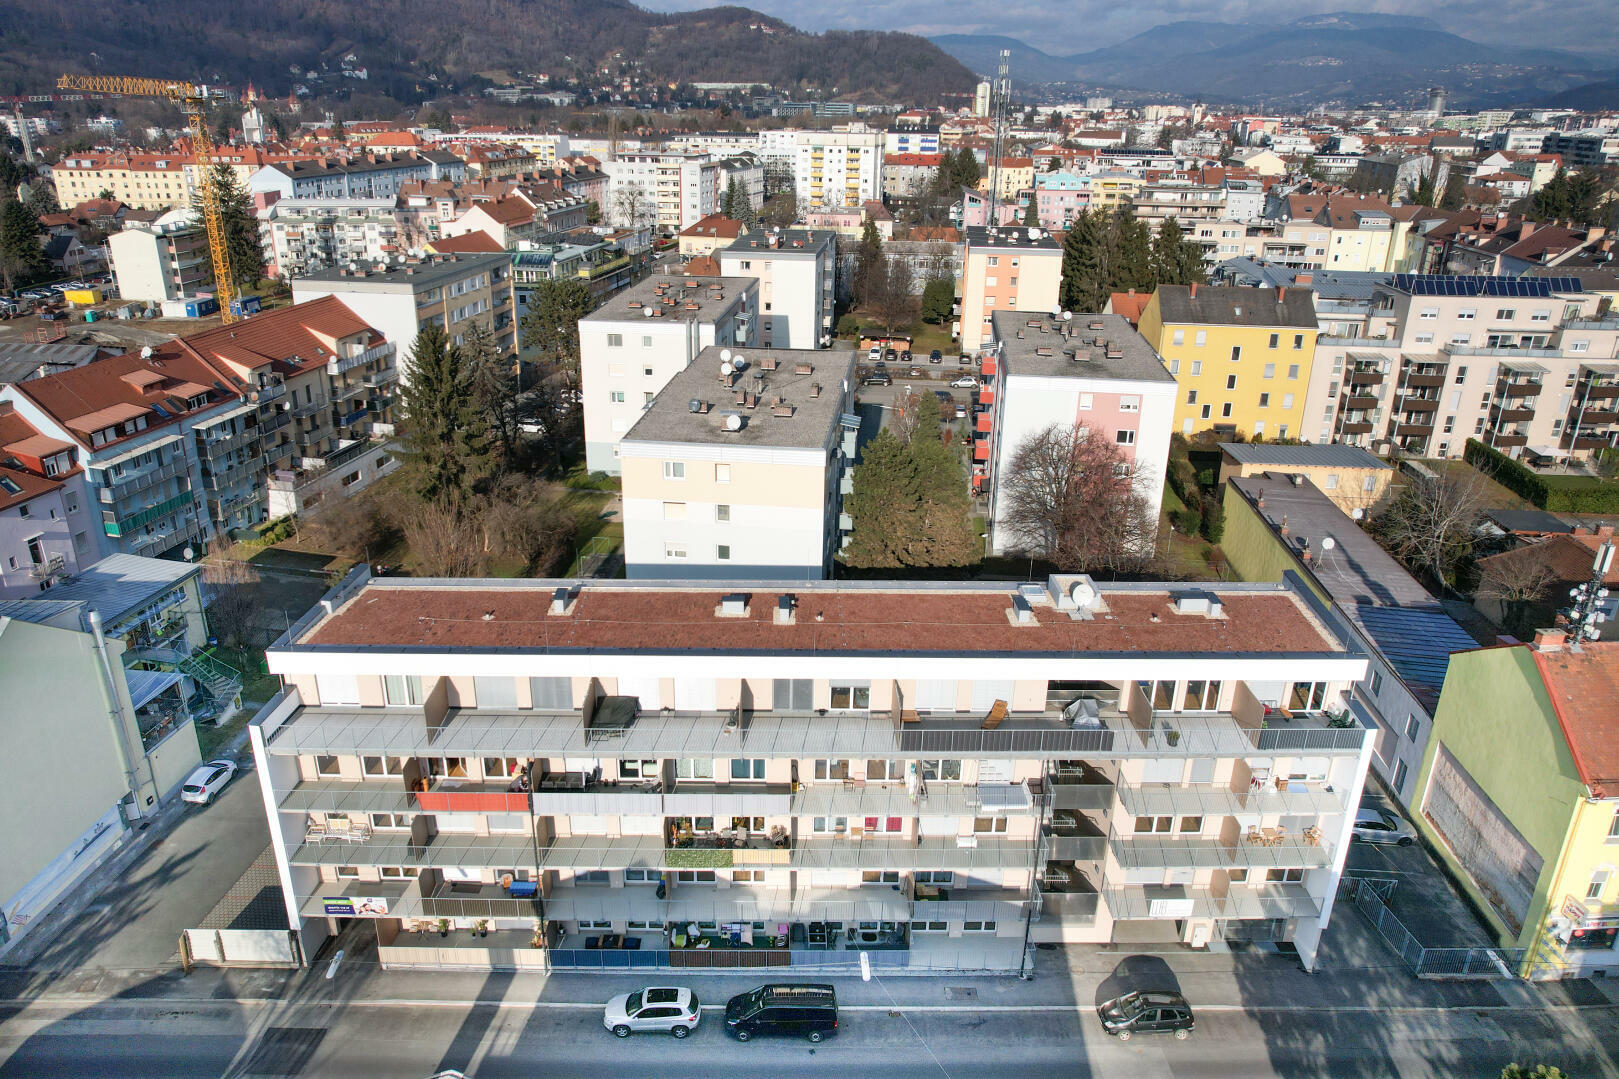 Wohnung zu mieten: Reininghausstraße 56, 8020 Graz - Mietwohnung Reininghausstraße Top 15 (25)